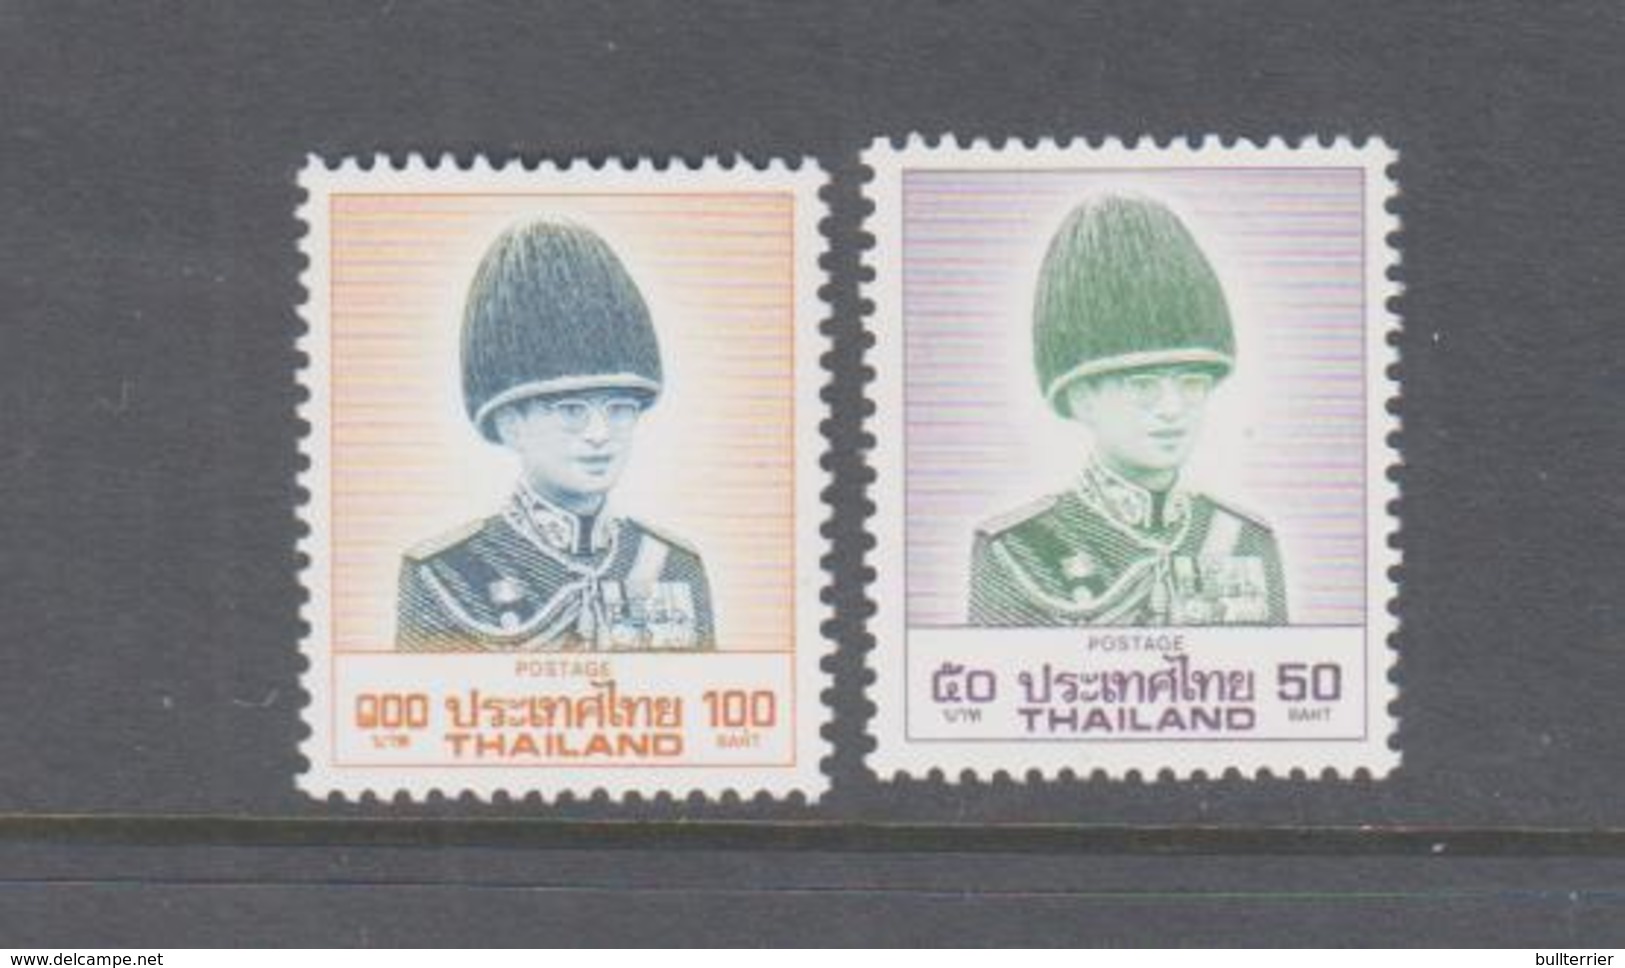 THAILAND - 1988- King Bhumibol 25b Nd 50b High Vals MNH, SG £17.75 - Thailand